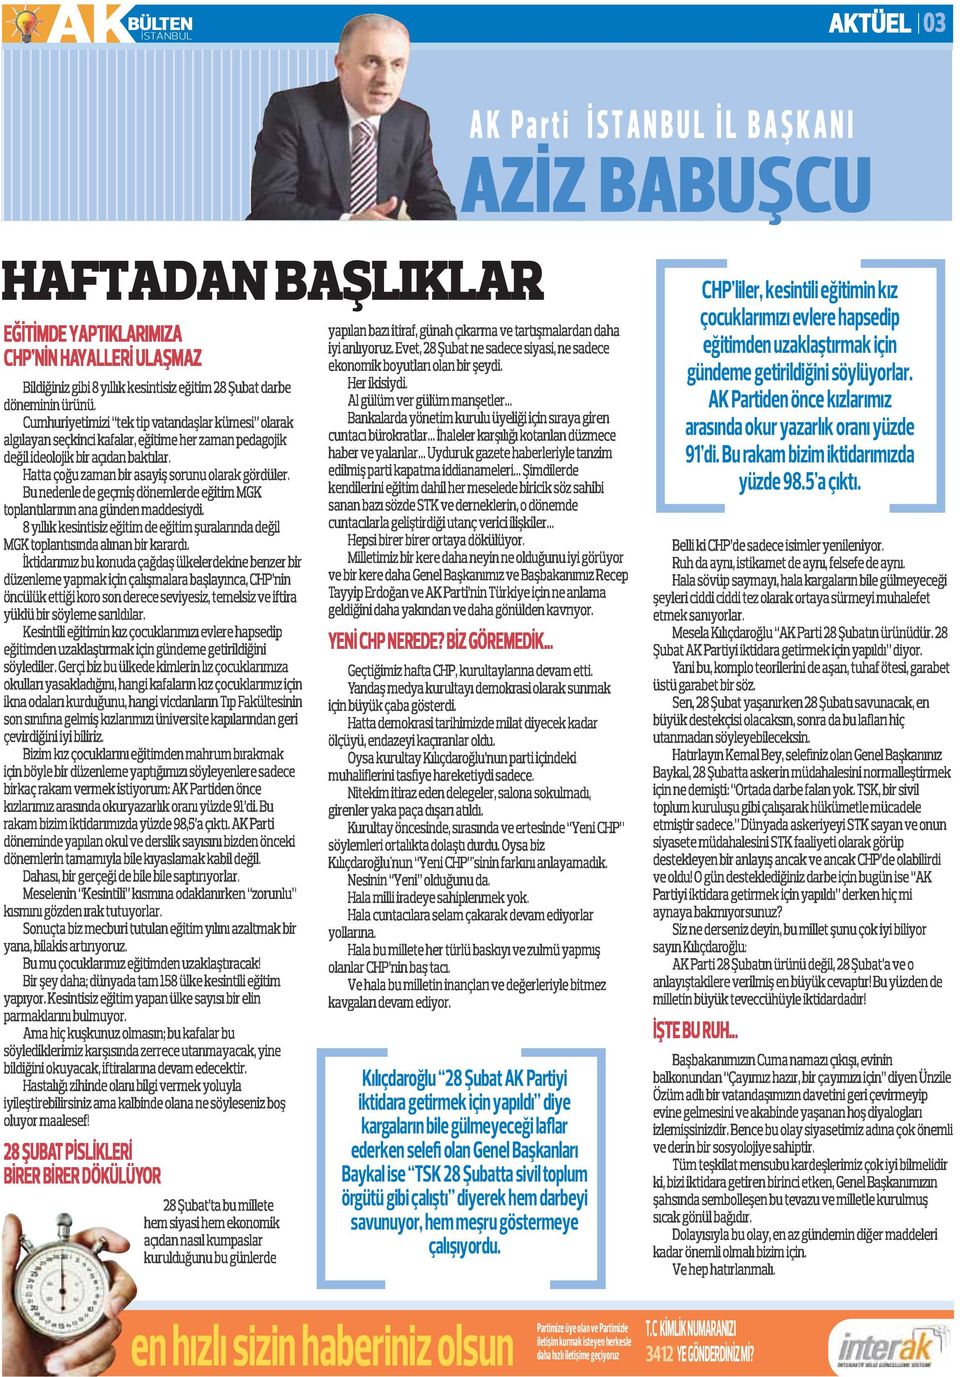 Kılıçdaroğlu 28 Şubat AK Partiyi iktidara getirmek için yapıldı diye kargaların bile gülmeyeceği laflar ederken selefi olan Genel Başkanları Baykal ise TSK 28 Şubatta sivil toplum örgütü